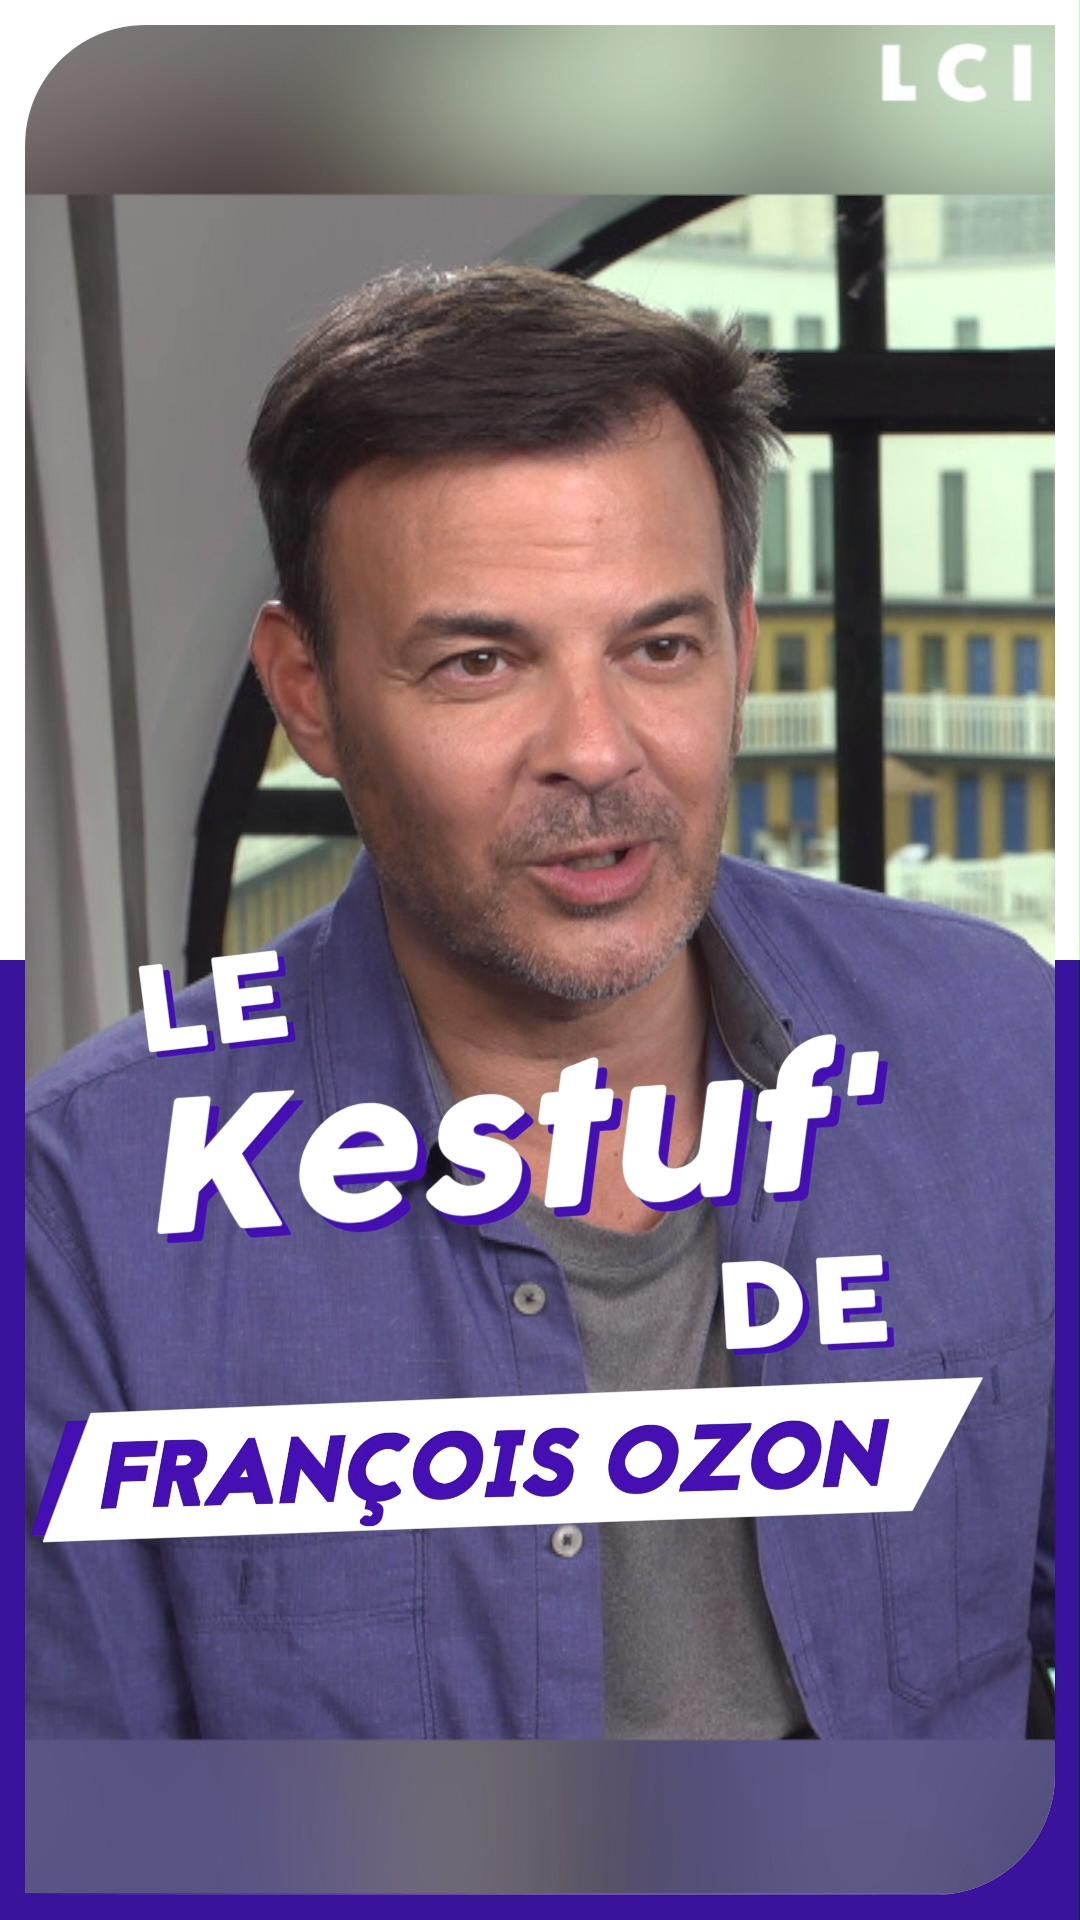 VIDEO LCI PLAY - Le Kestuf' de François Ozon pour "Eté 85"